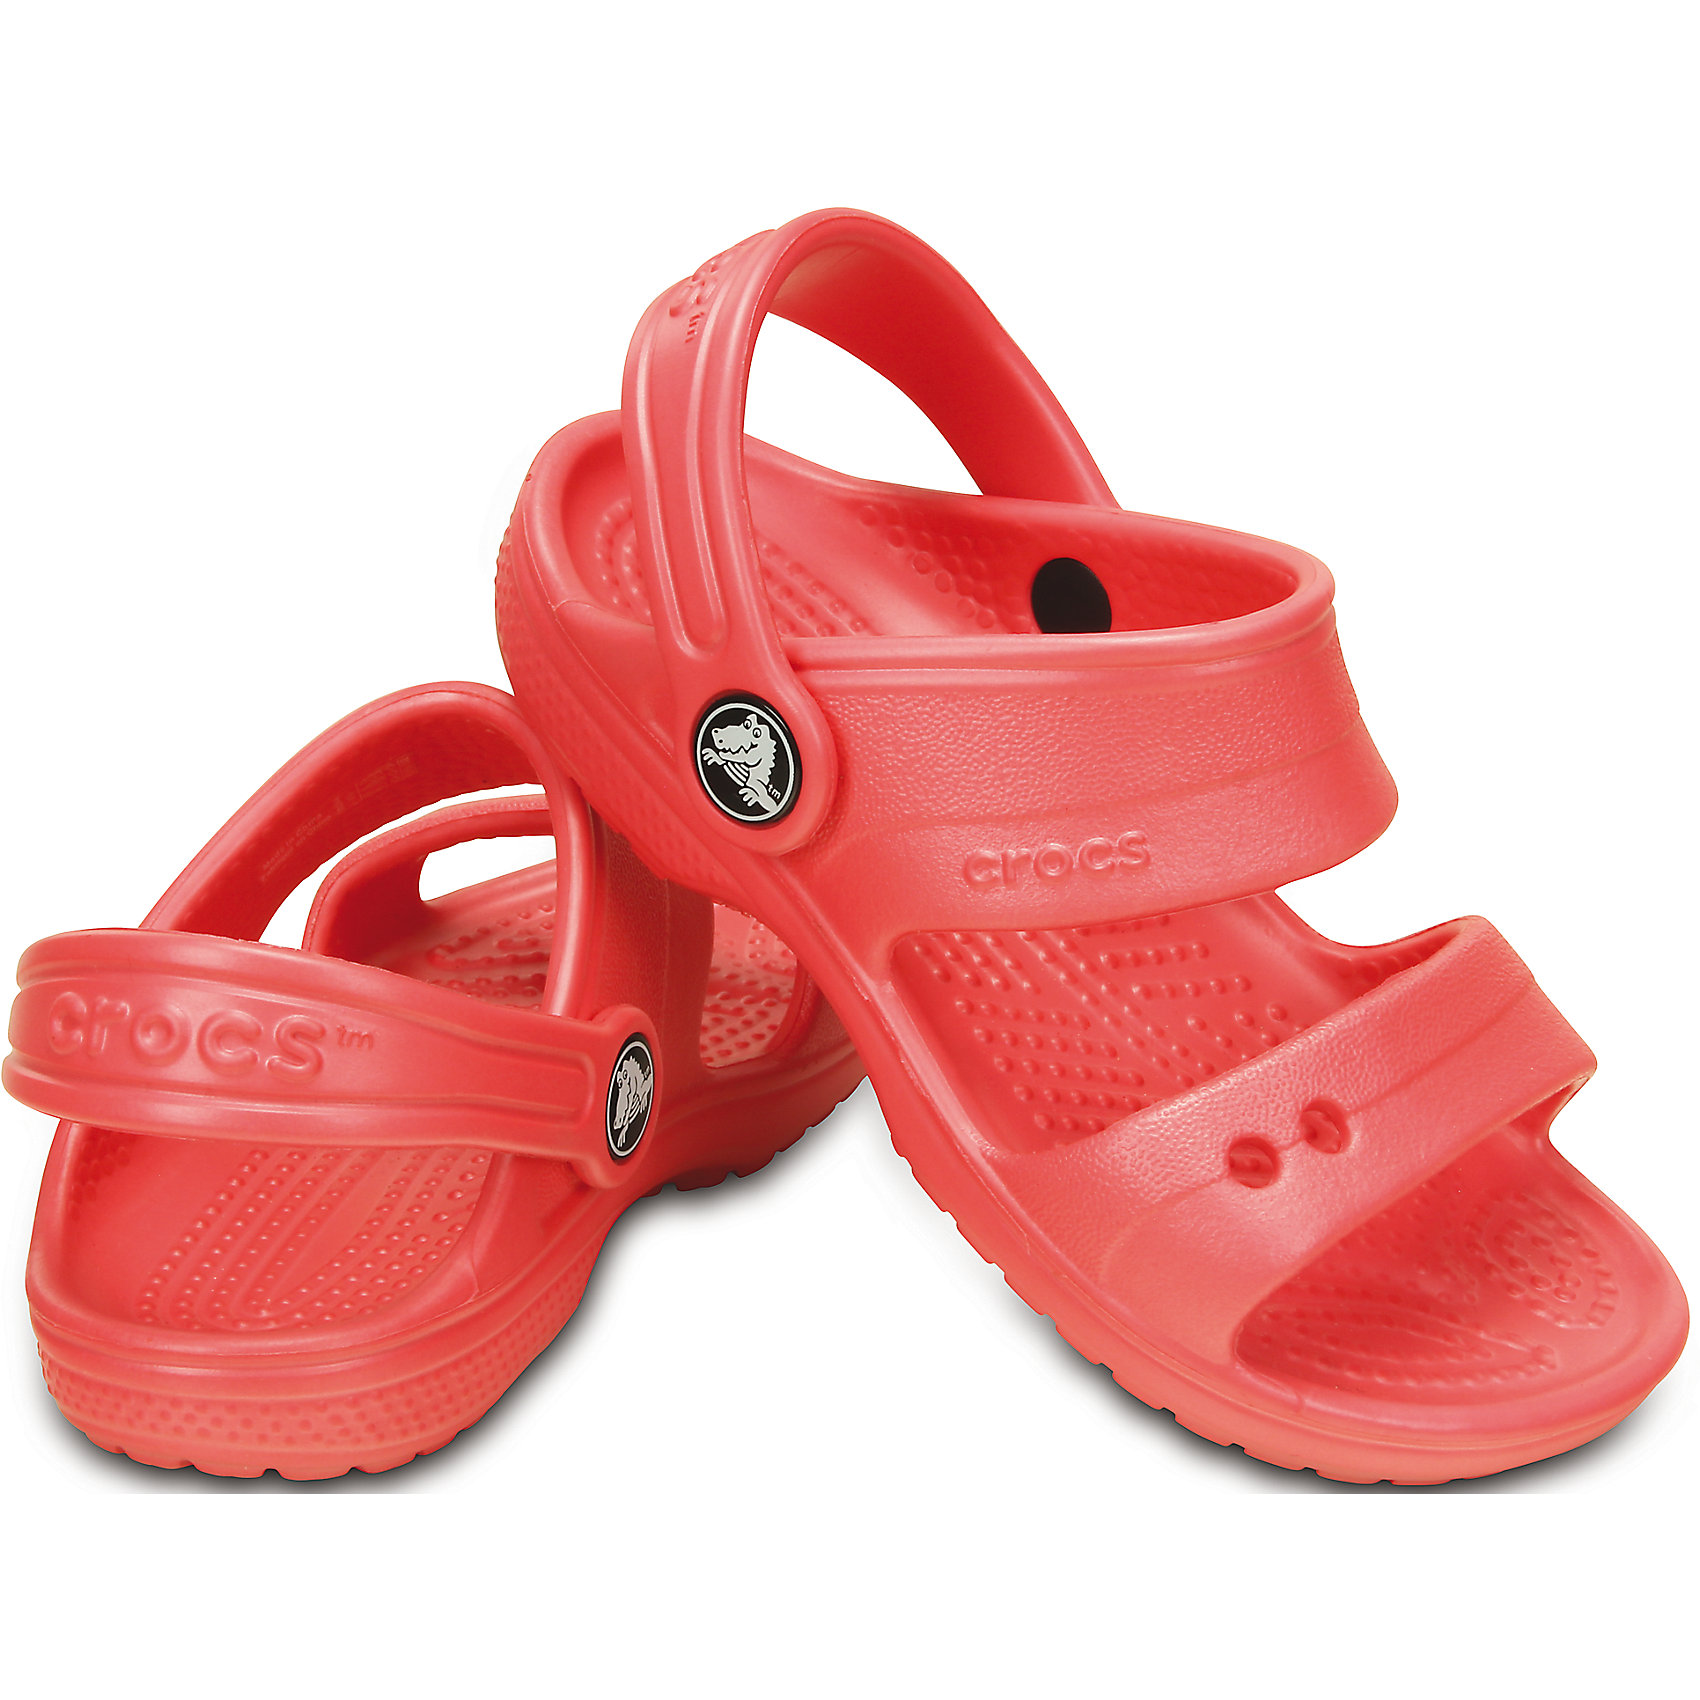 Крокс сандали. Crocs Classic Sandal. Crocs Classic Crocs Sandal. Сандалии коралловые Crocs детские. Сандалии детские Crocs Crocband Sandal Kids.